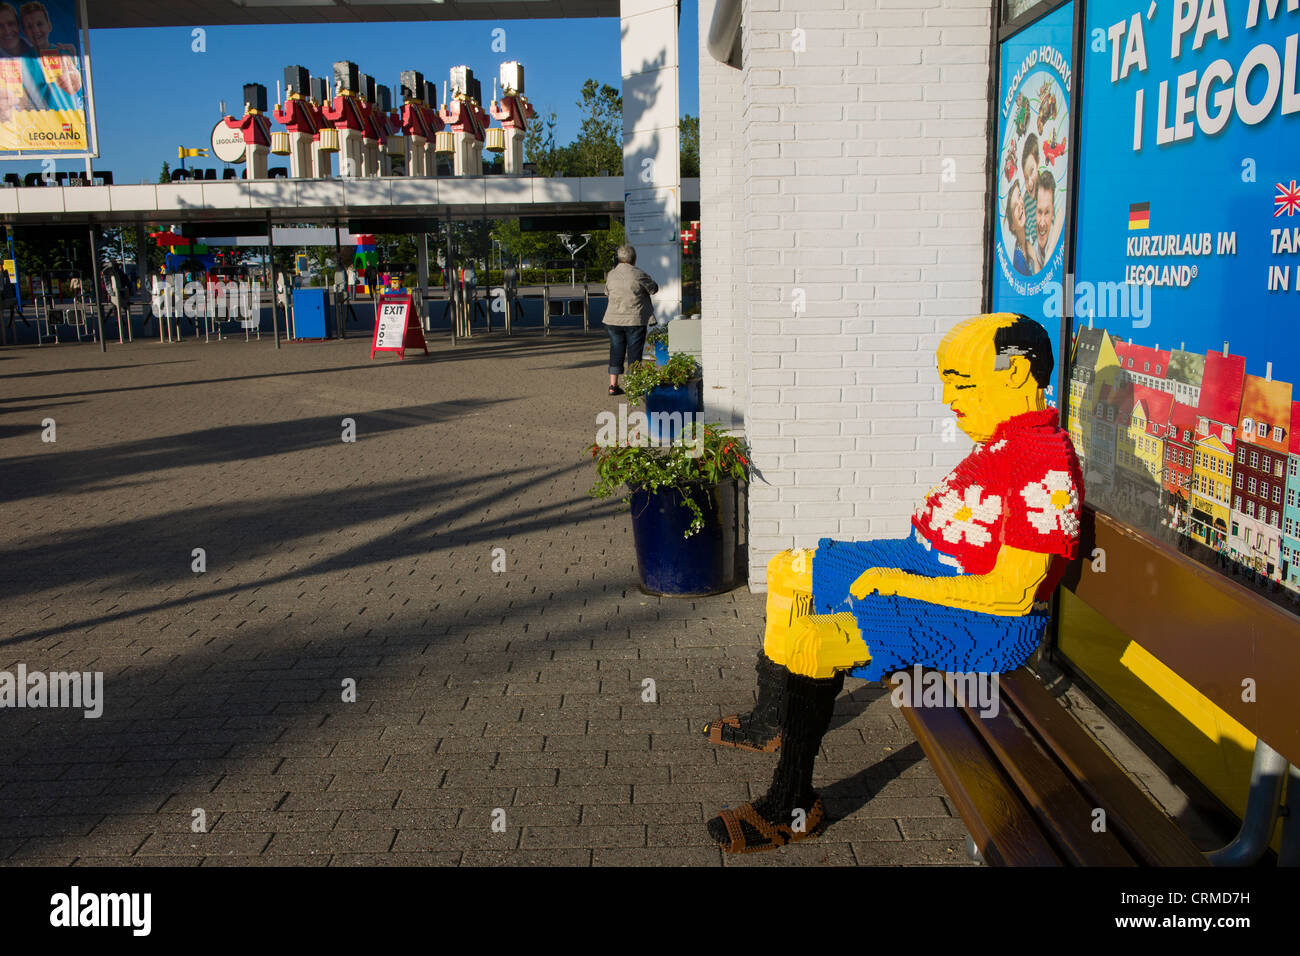 Touristiques Lego dormir sur un banc par l'entrée principale du parc Legoland, à Billund, Danemark Banque D'Images